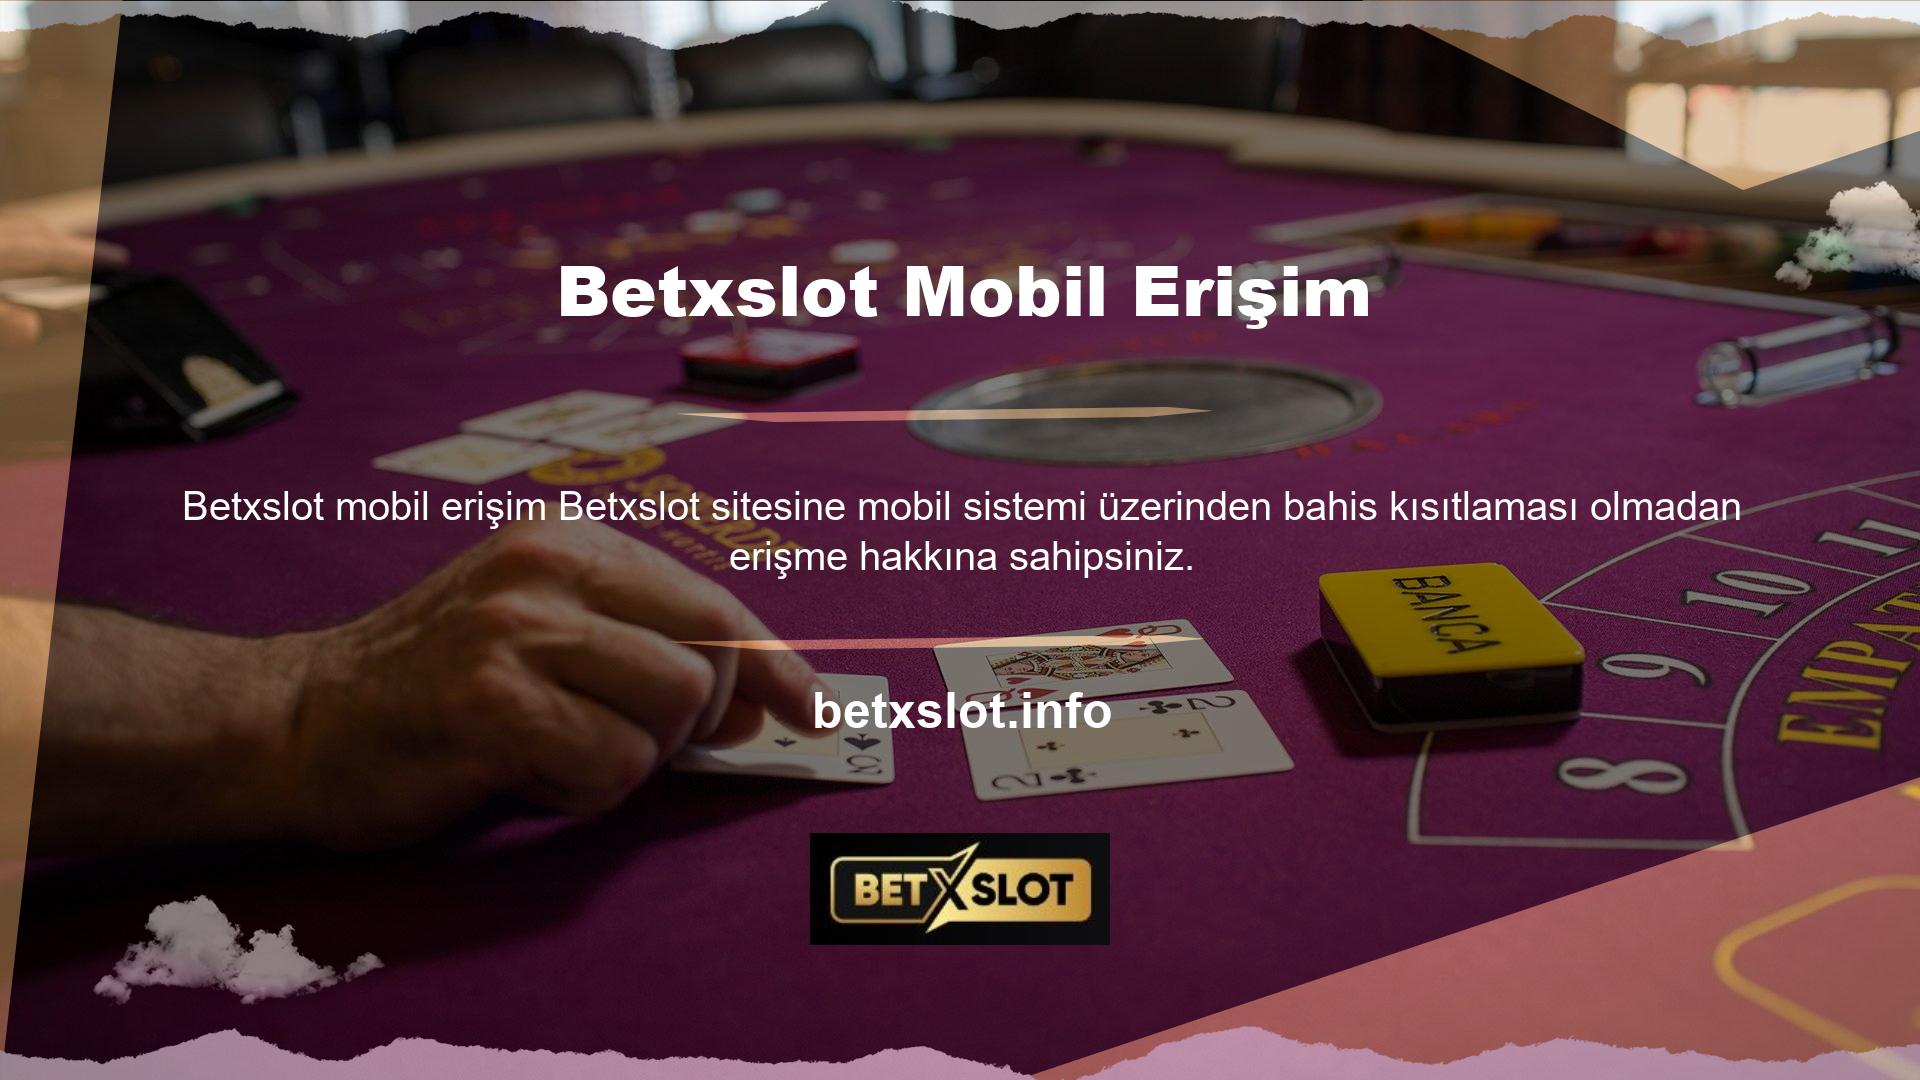 Betxslot web sitesine mobil erişim prosedürü, uygulamayı Google Play Store ve AppStroe üzerinden kullanıcılara sunarak mümkün olmaktadır